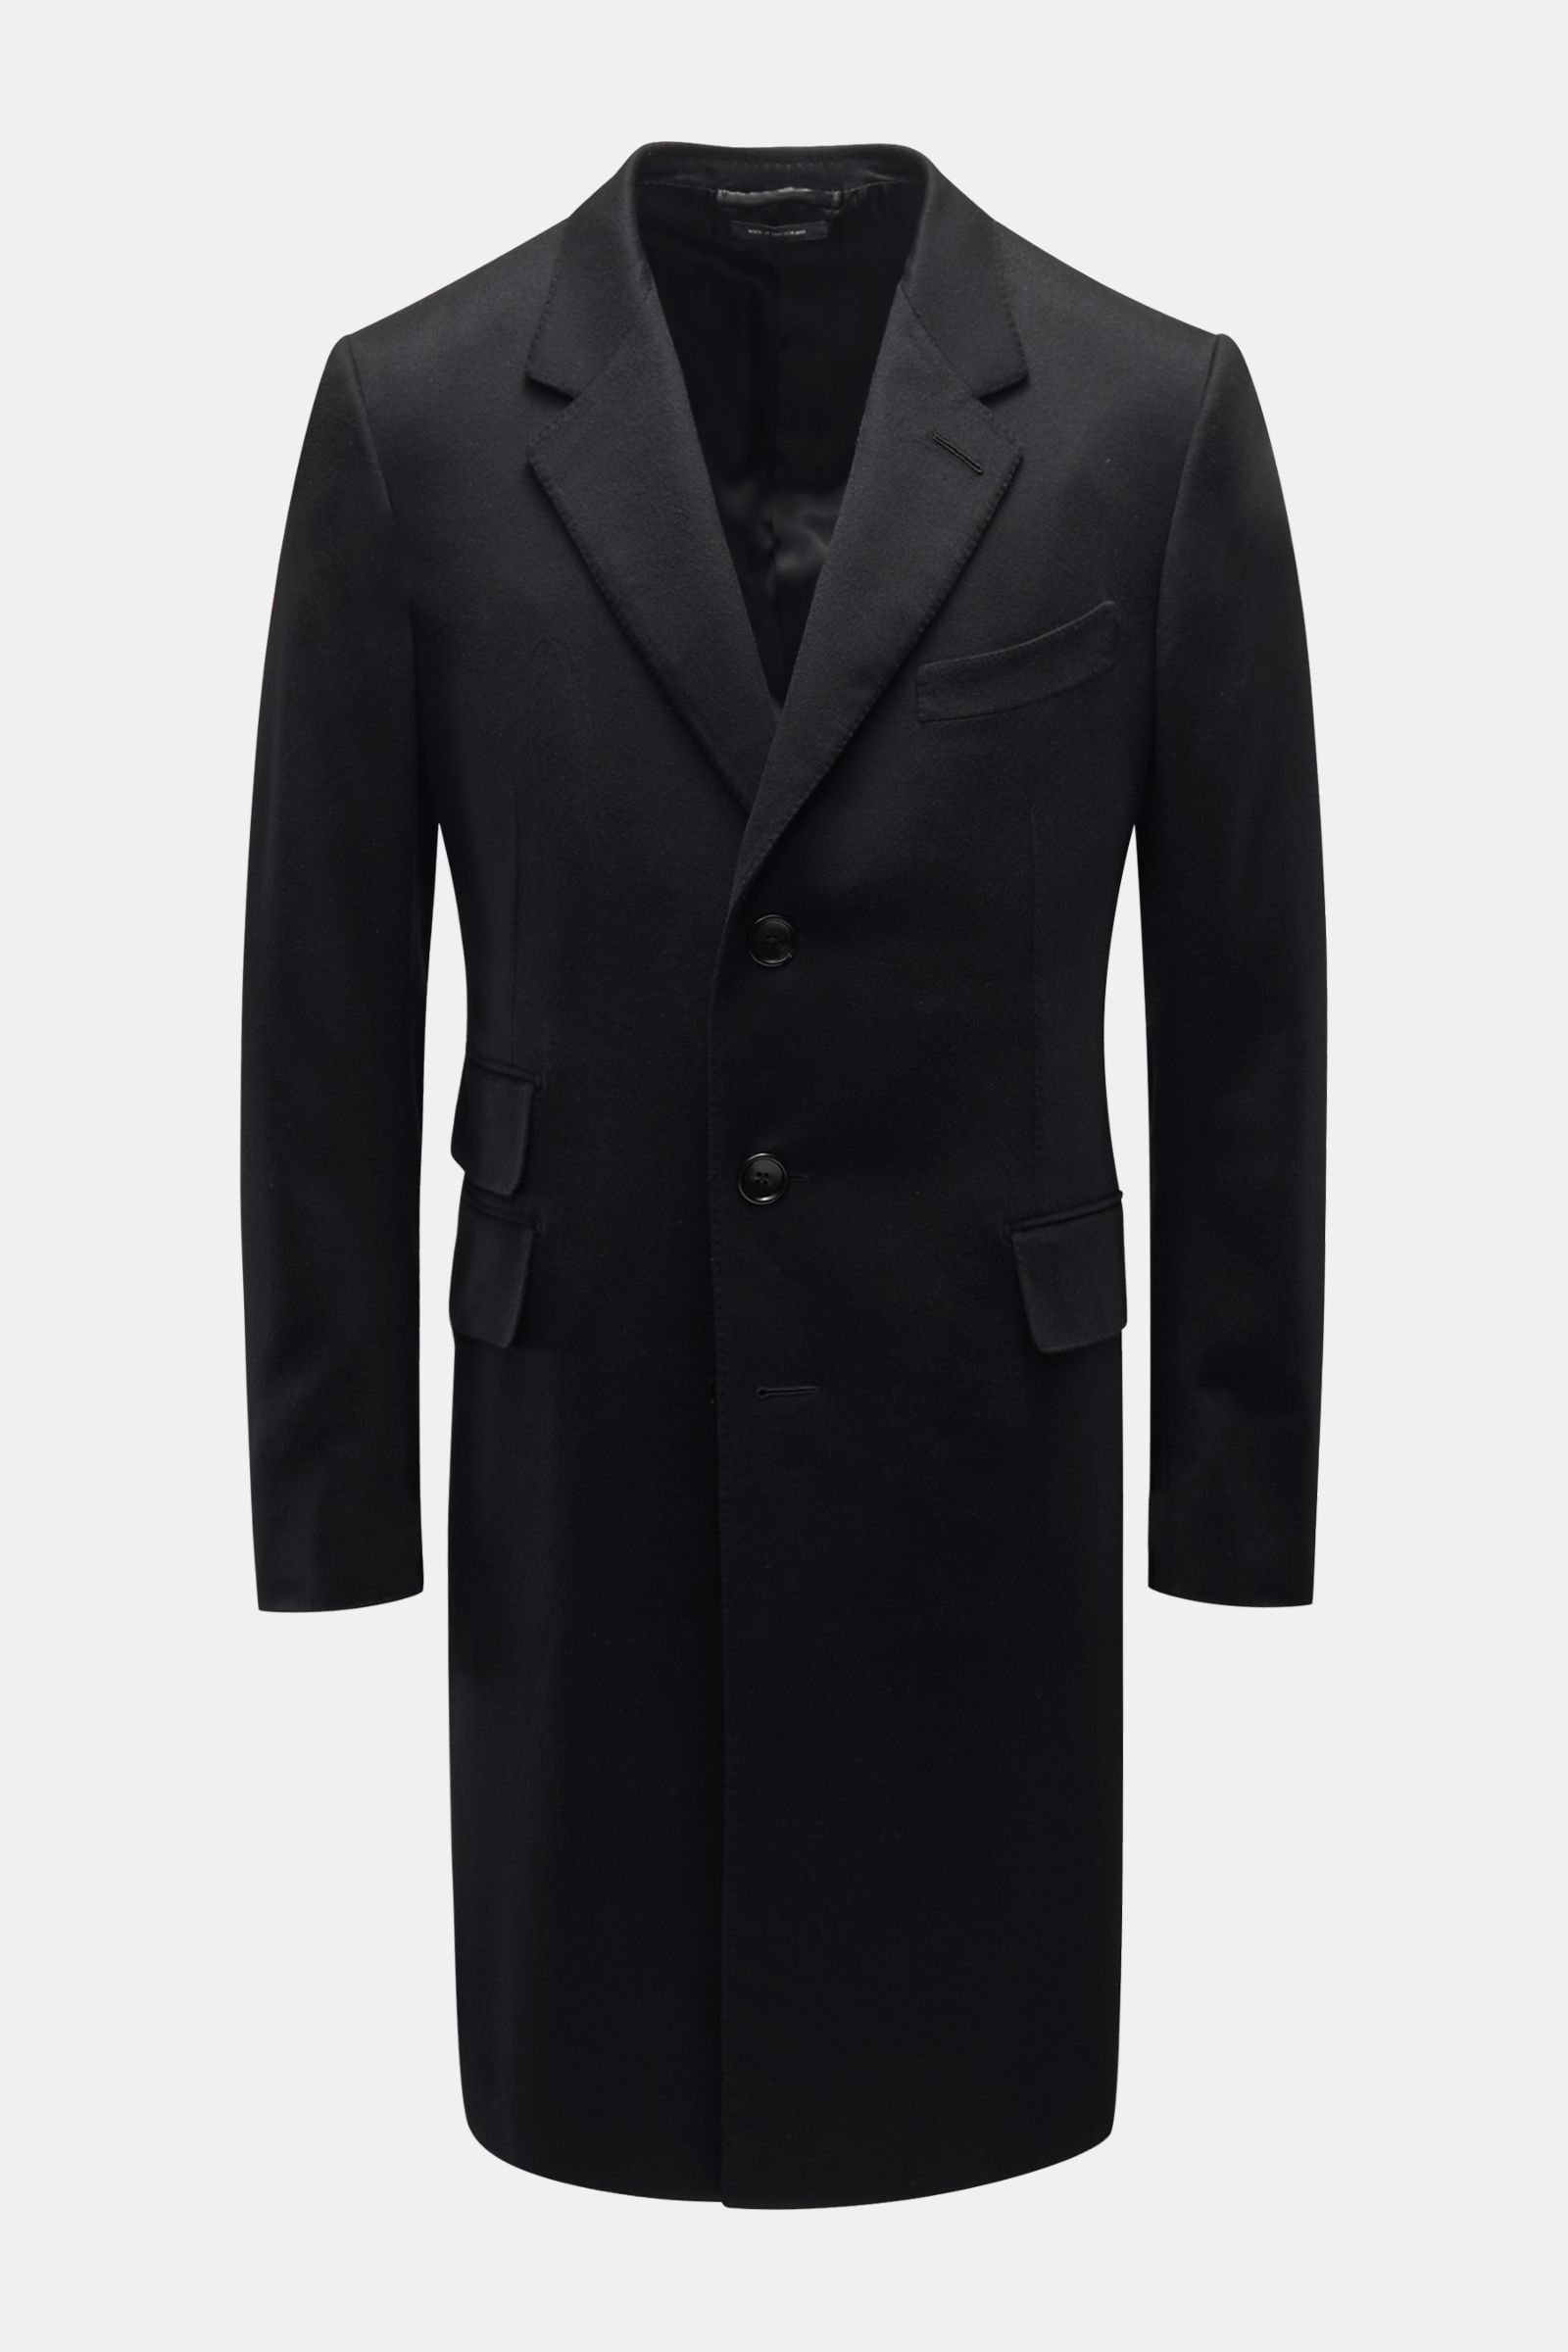 Cashmere coat black